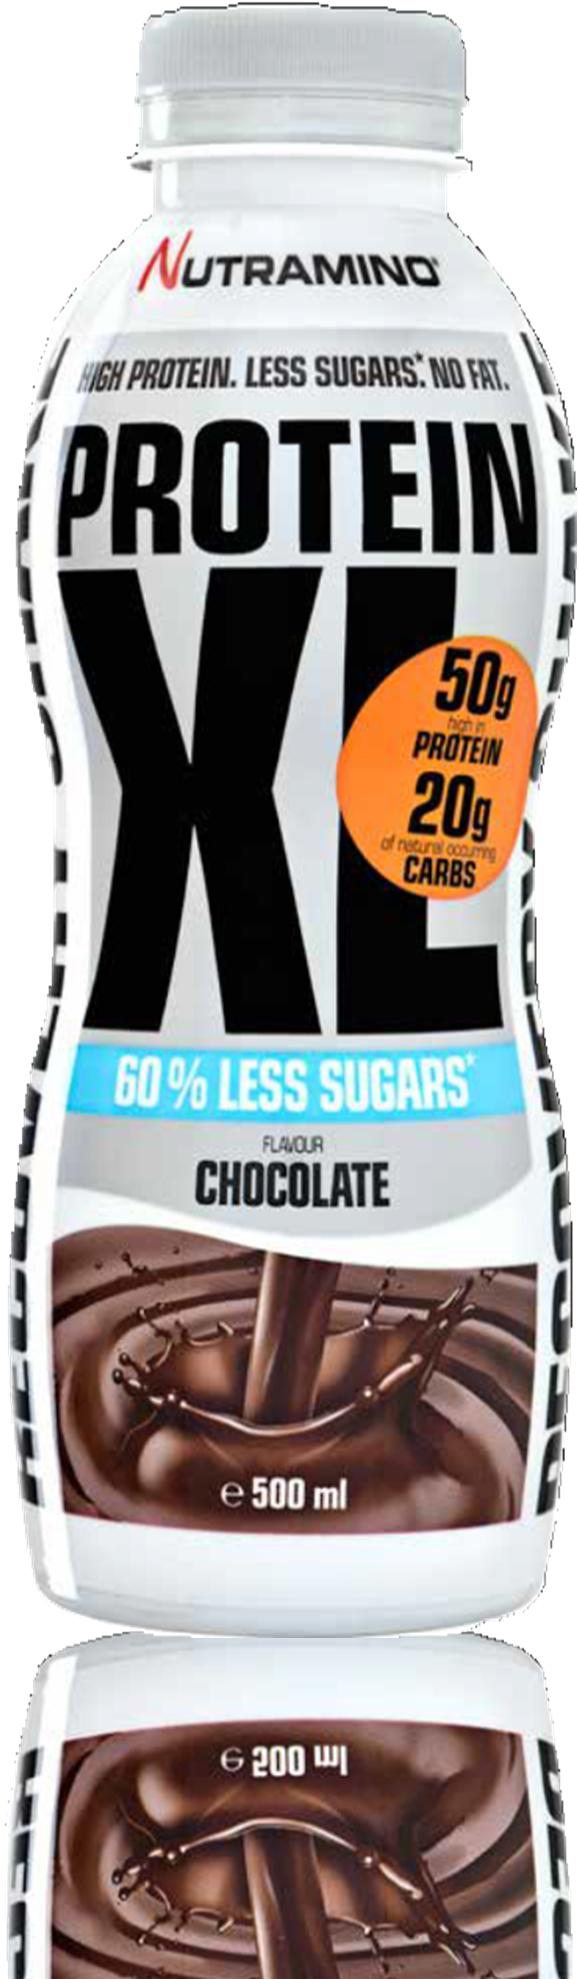 PROTEIN XL SHAKE LESS SUGARS CHOCOLATE 500 ml Nutramino XL Less Sugars Shake on suunniteltu vastaamaan kovan intensiteetin harjoittelun vaatimuksia.